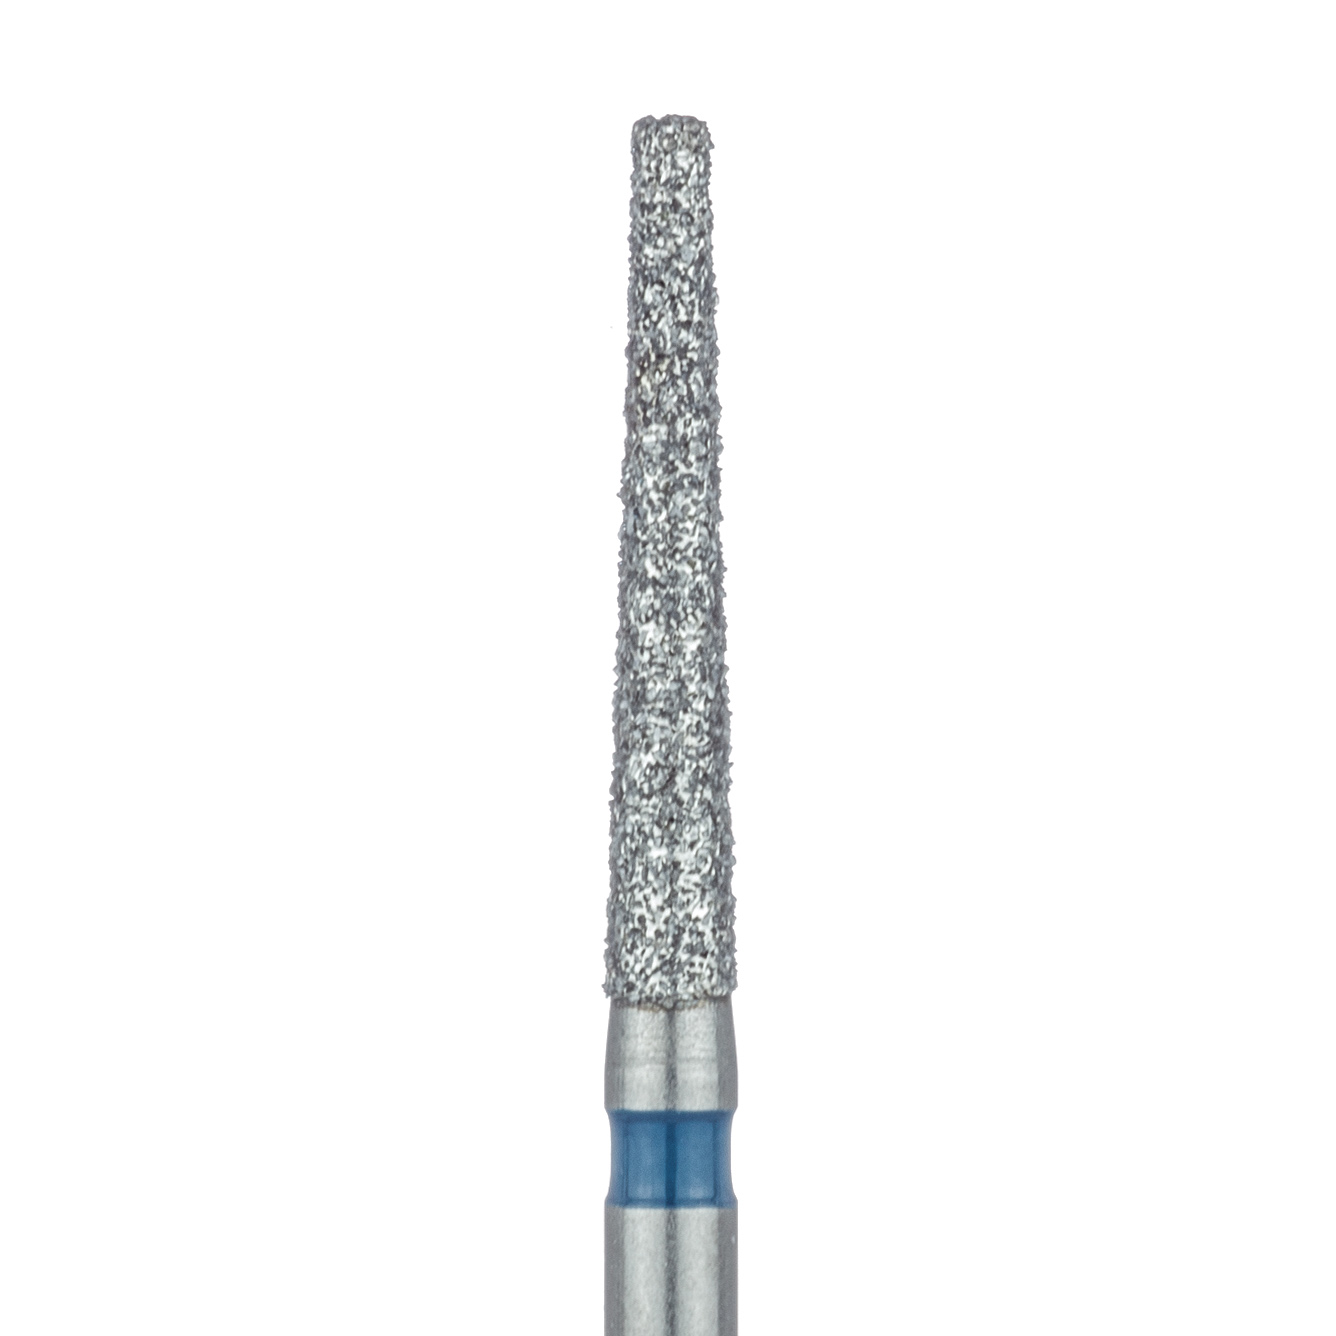 848-016-FG Extra Long Tapered Flat End Diamond Bur, 1.6mm Ø, Medium, 0.9mm Tip Ø, FG